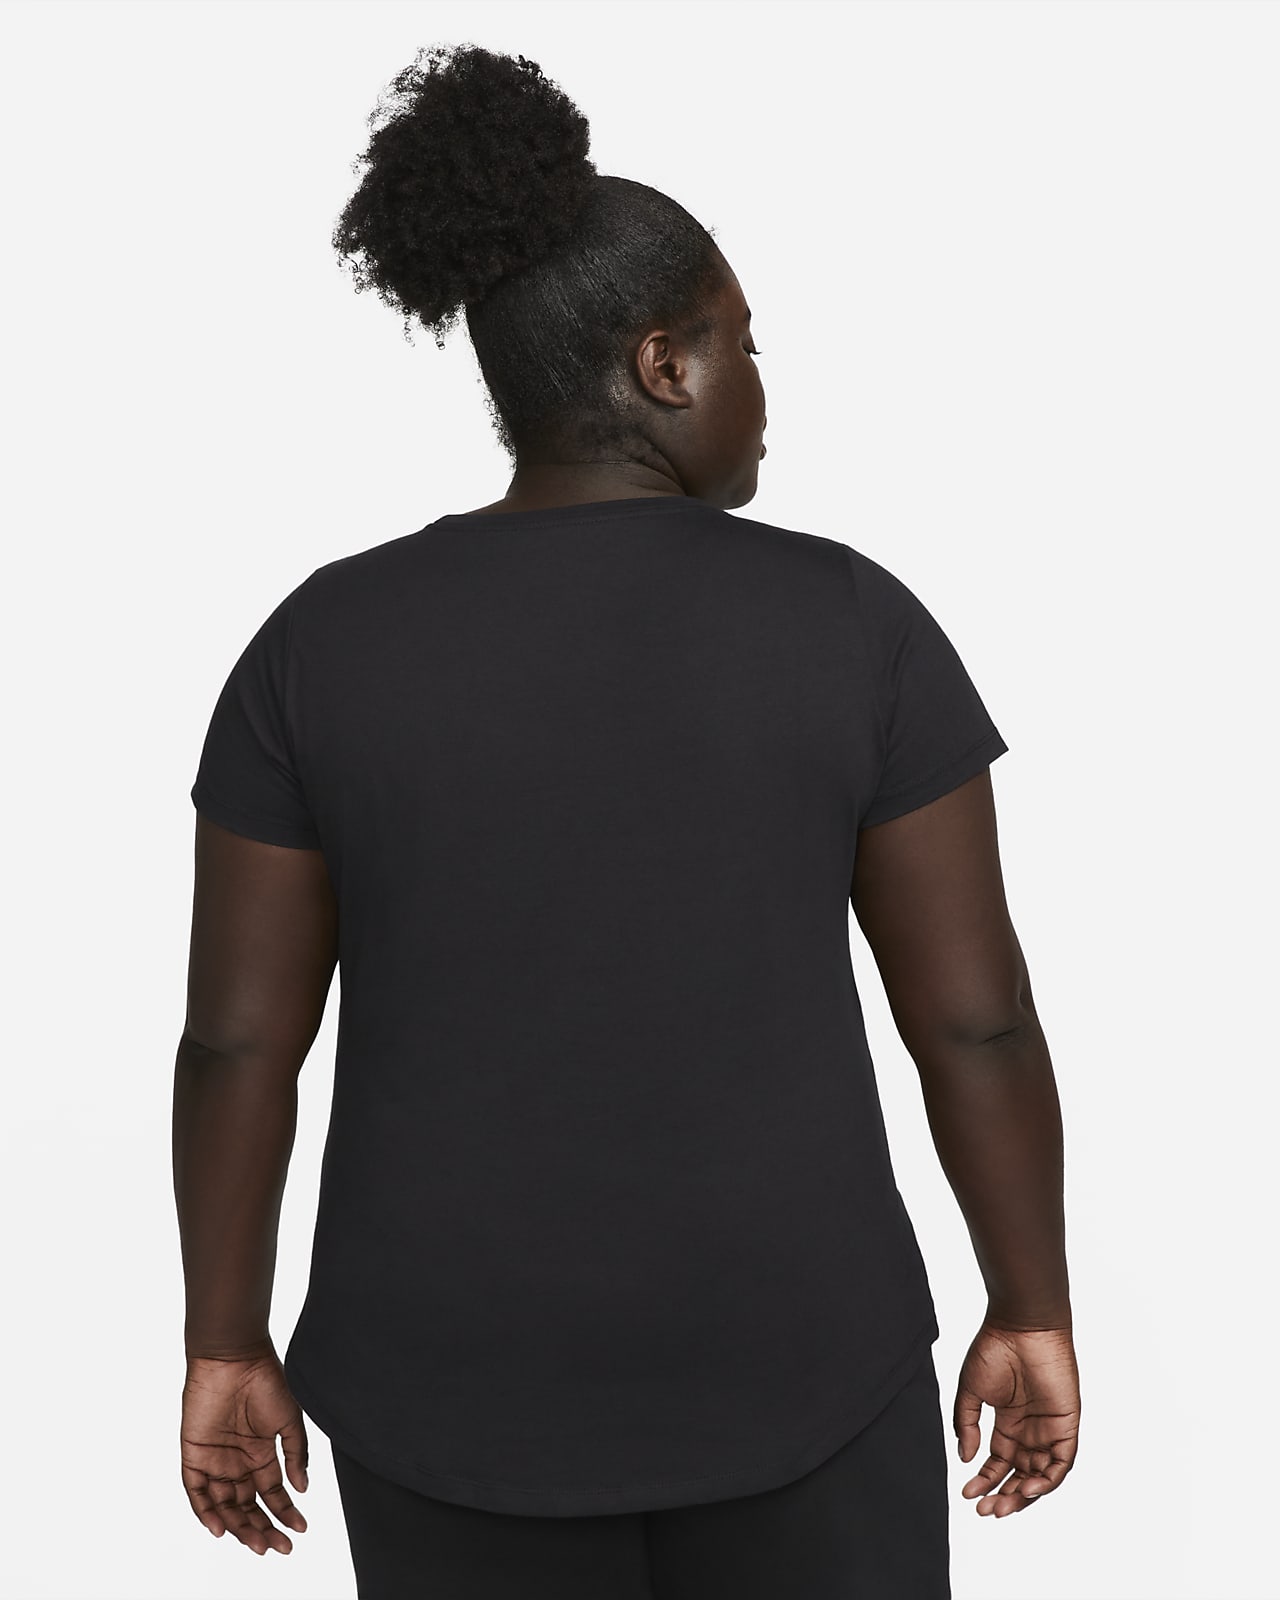 Nike Sportswear Swoosh Women's Graphic (Plus Size).